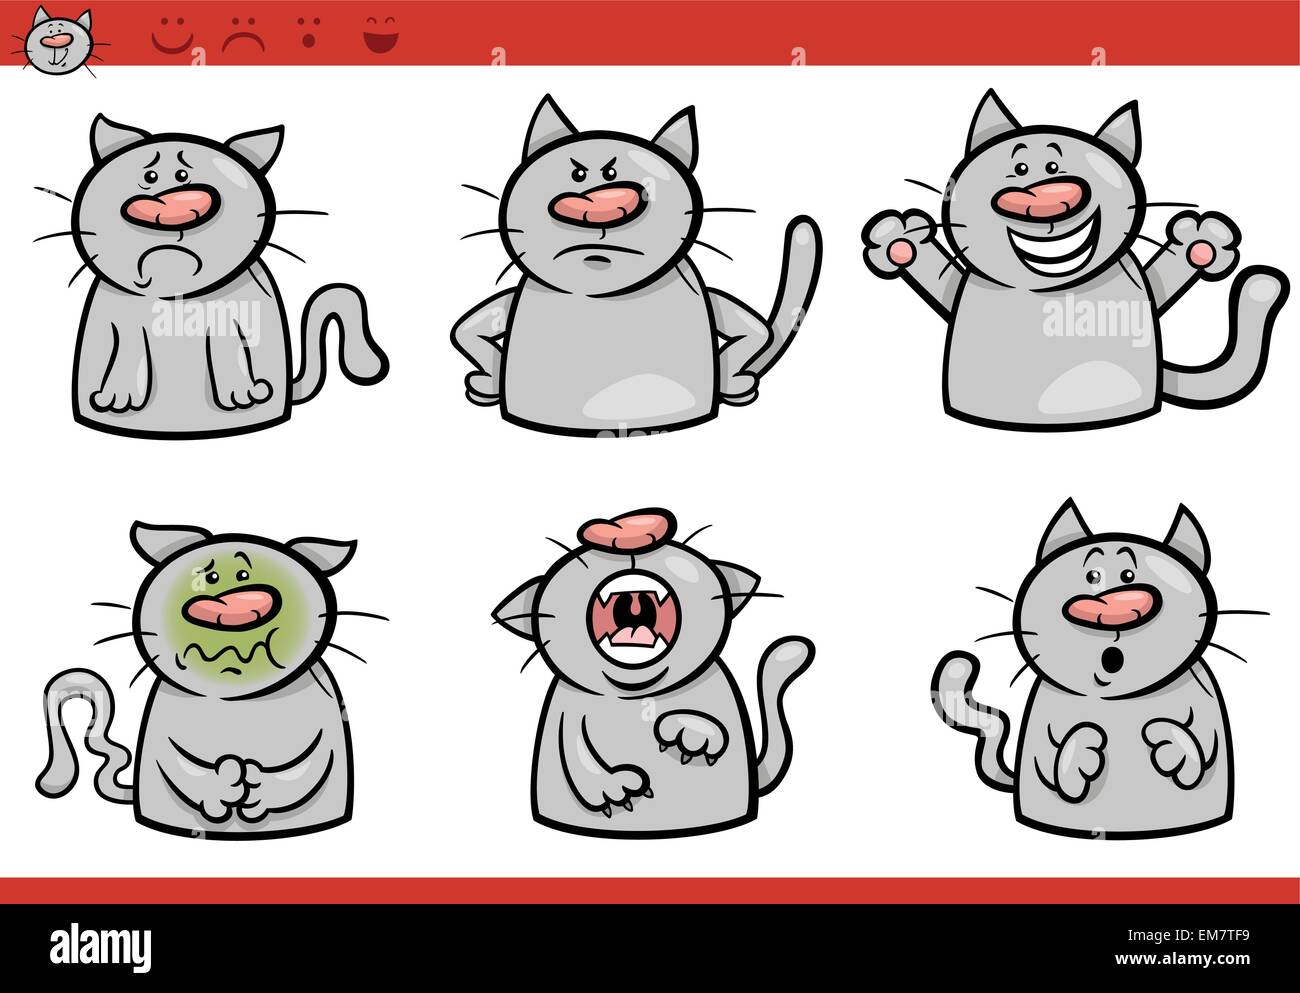 cat emotions cartoon illustration set Stock Vector